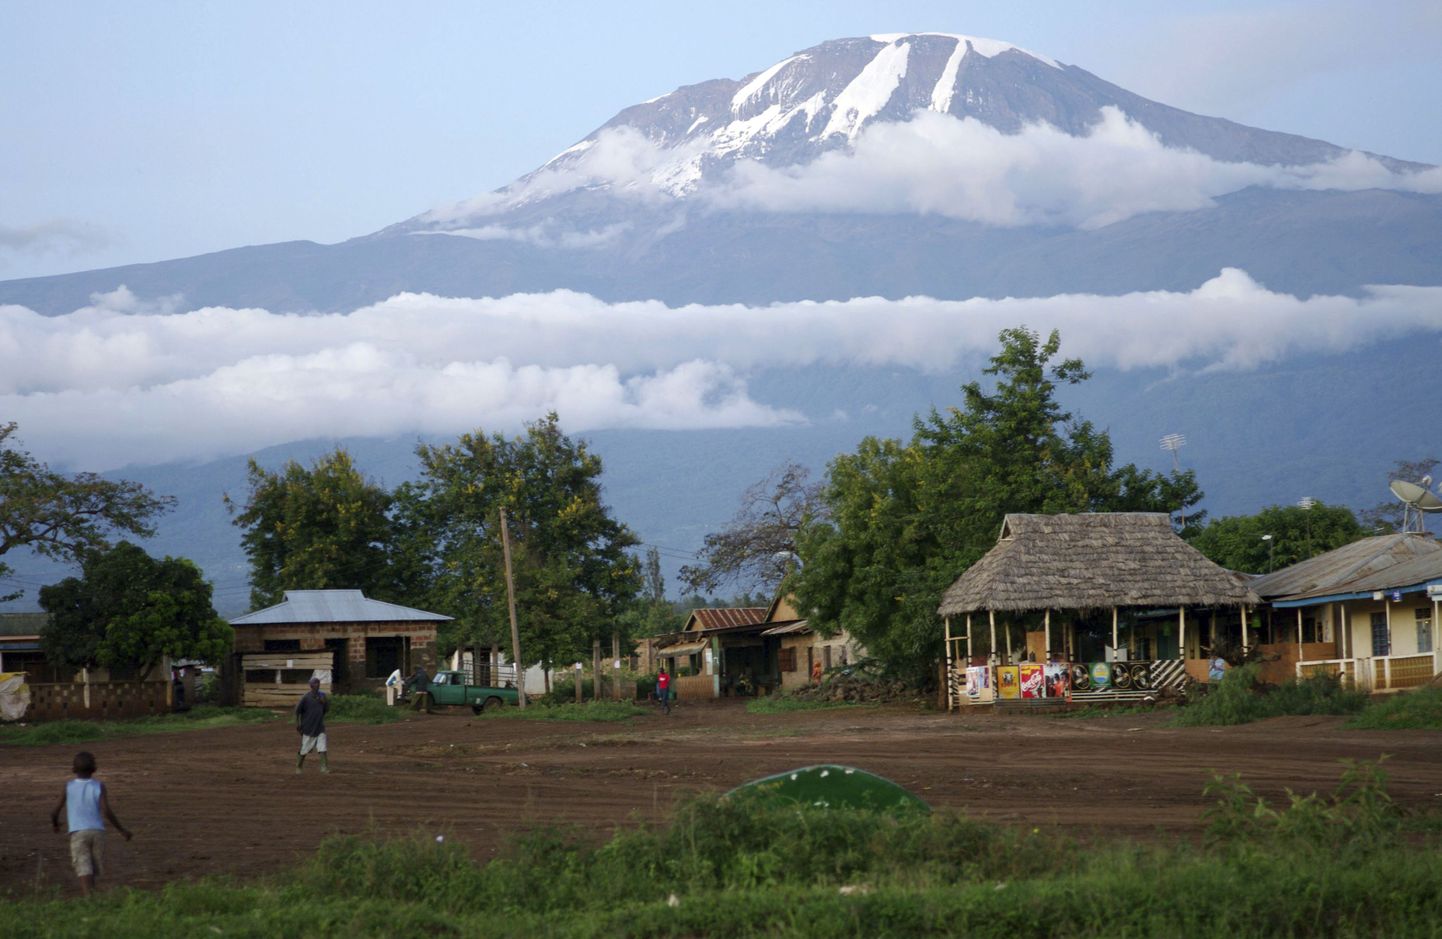 Aafrika kõrgeim mägi Kilimanjaro (5895 m).